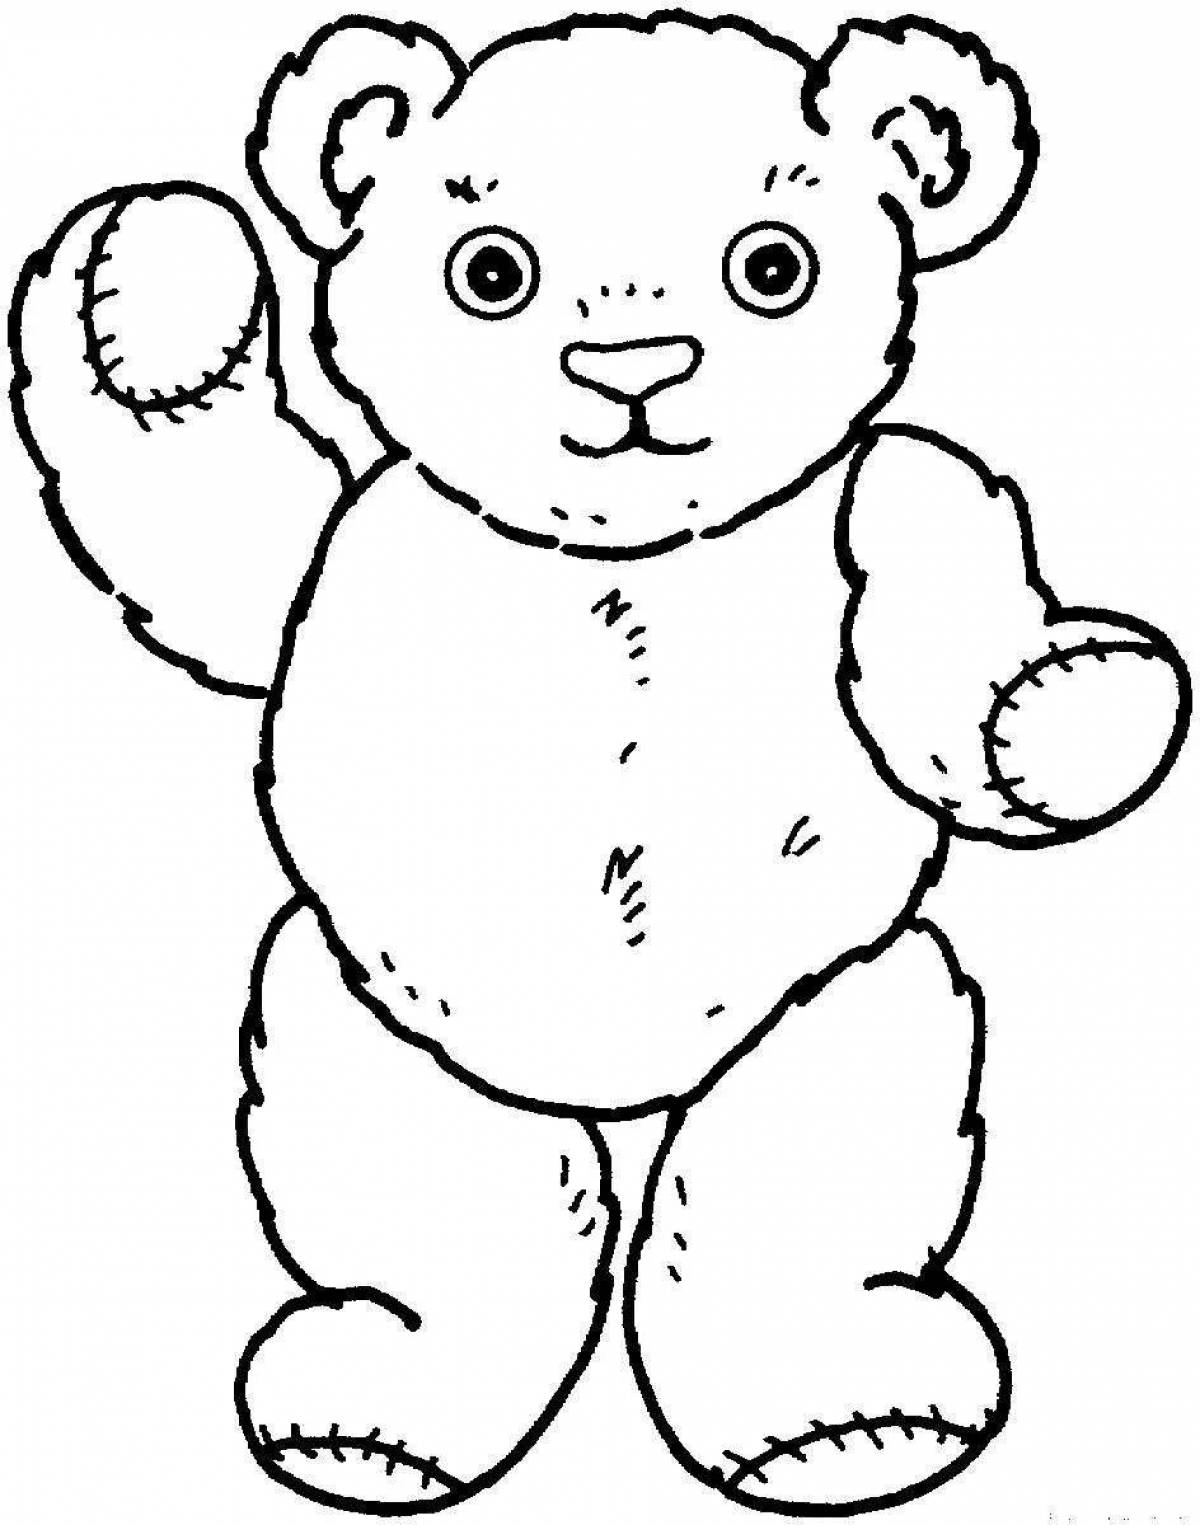 Cute bear coloring book